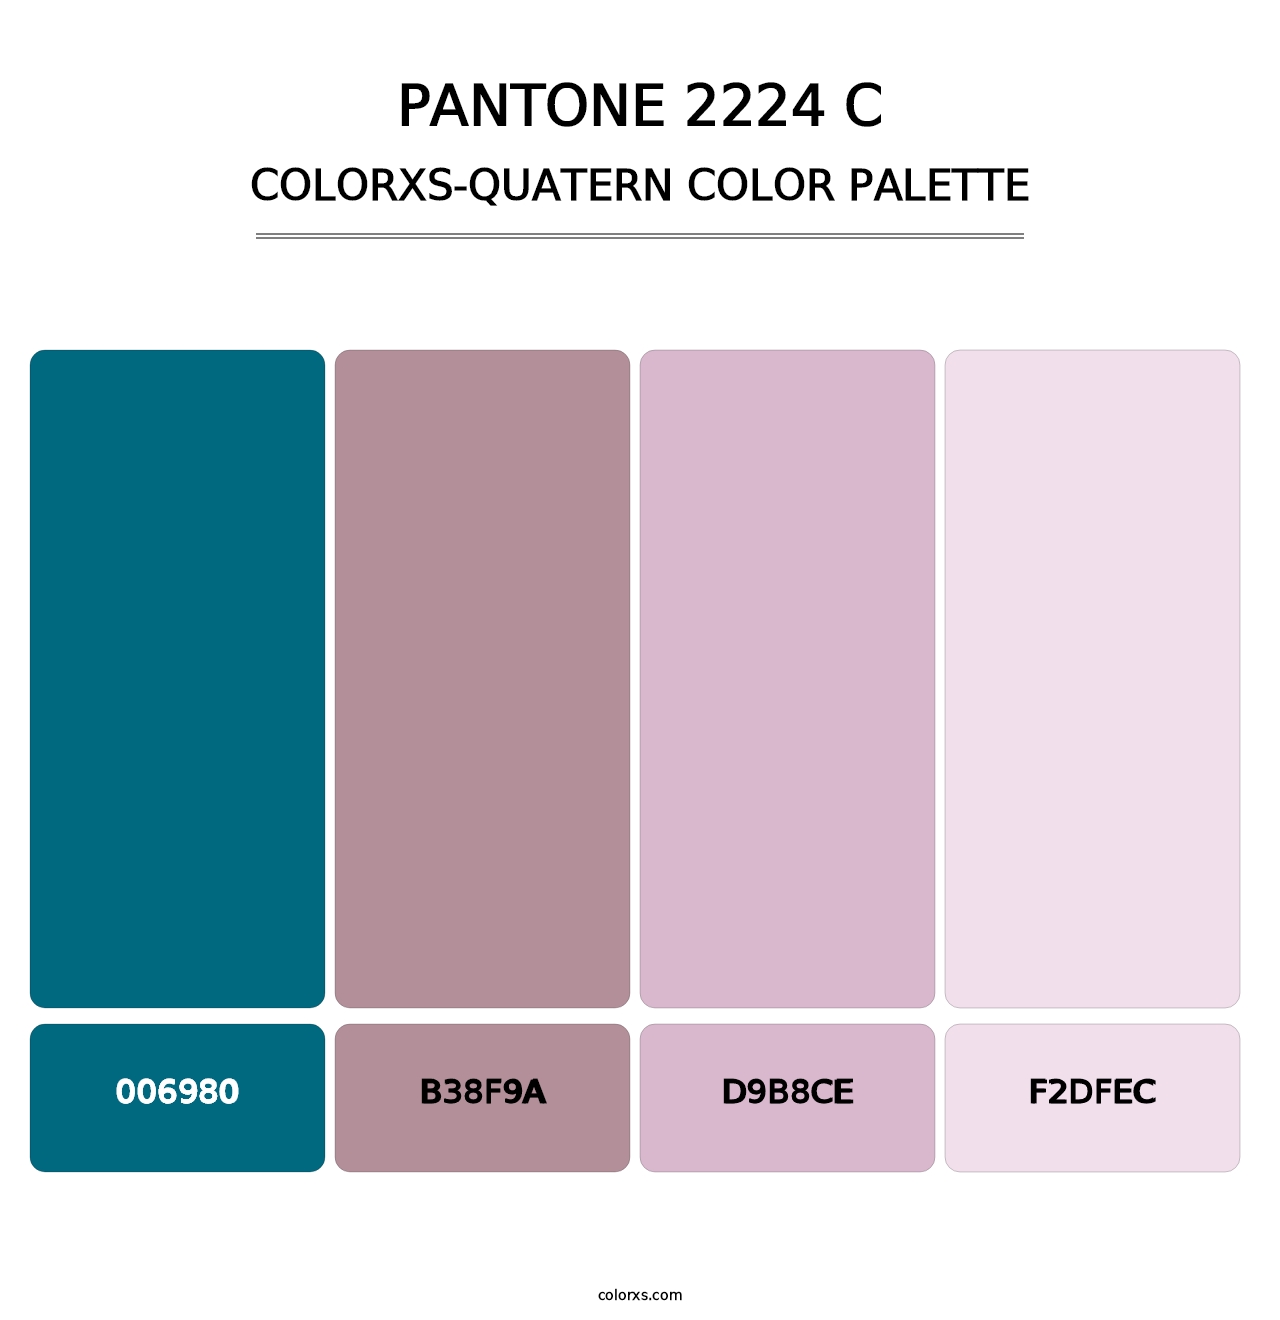 PANTONE 2224 C - Colorxs Quatern Palette